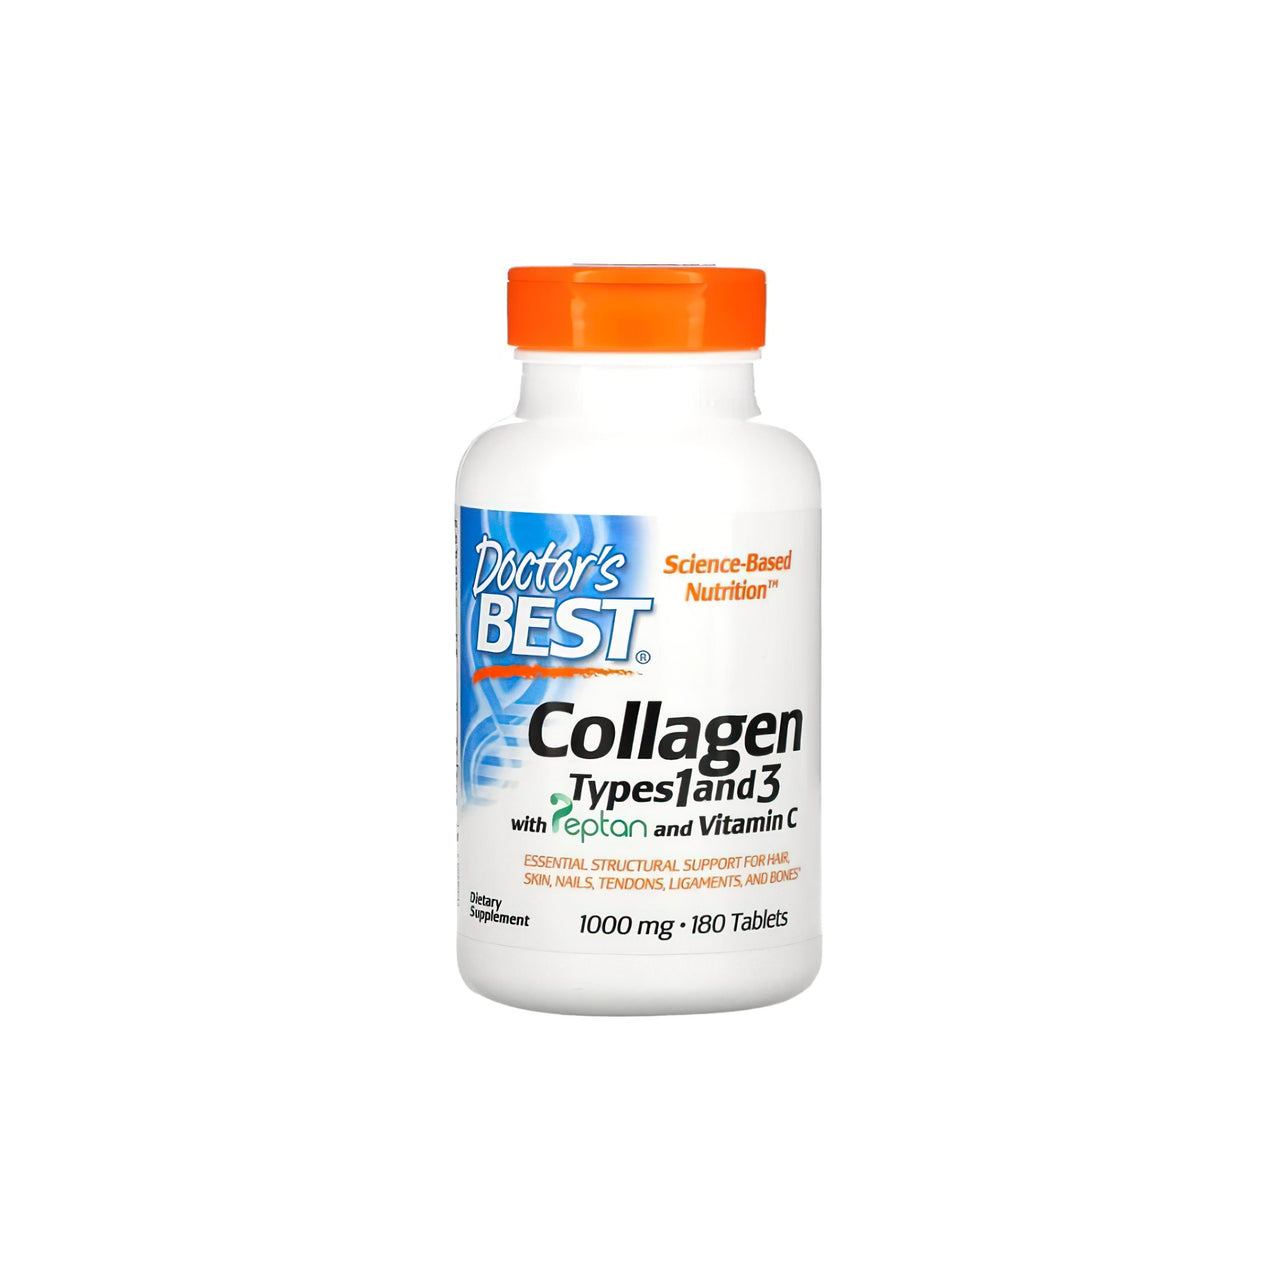 Eine Flasche Doctor's Best Collagen Typ 1 und 3 1000 mg 180 Tabletten, die beste Kollagenergänzung.